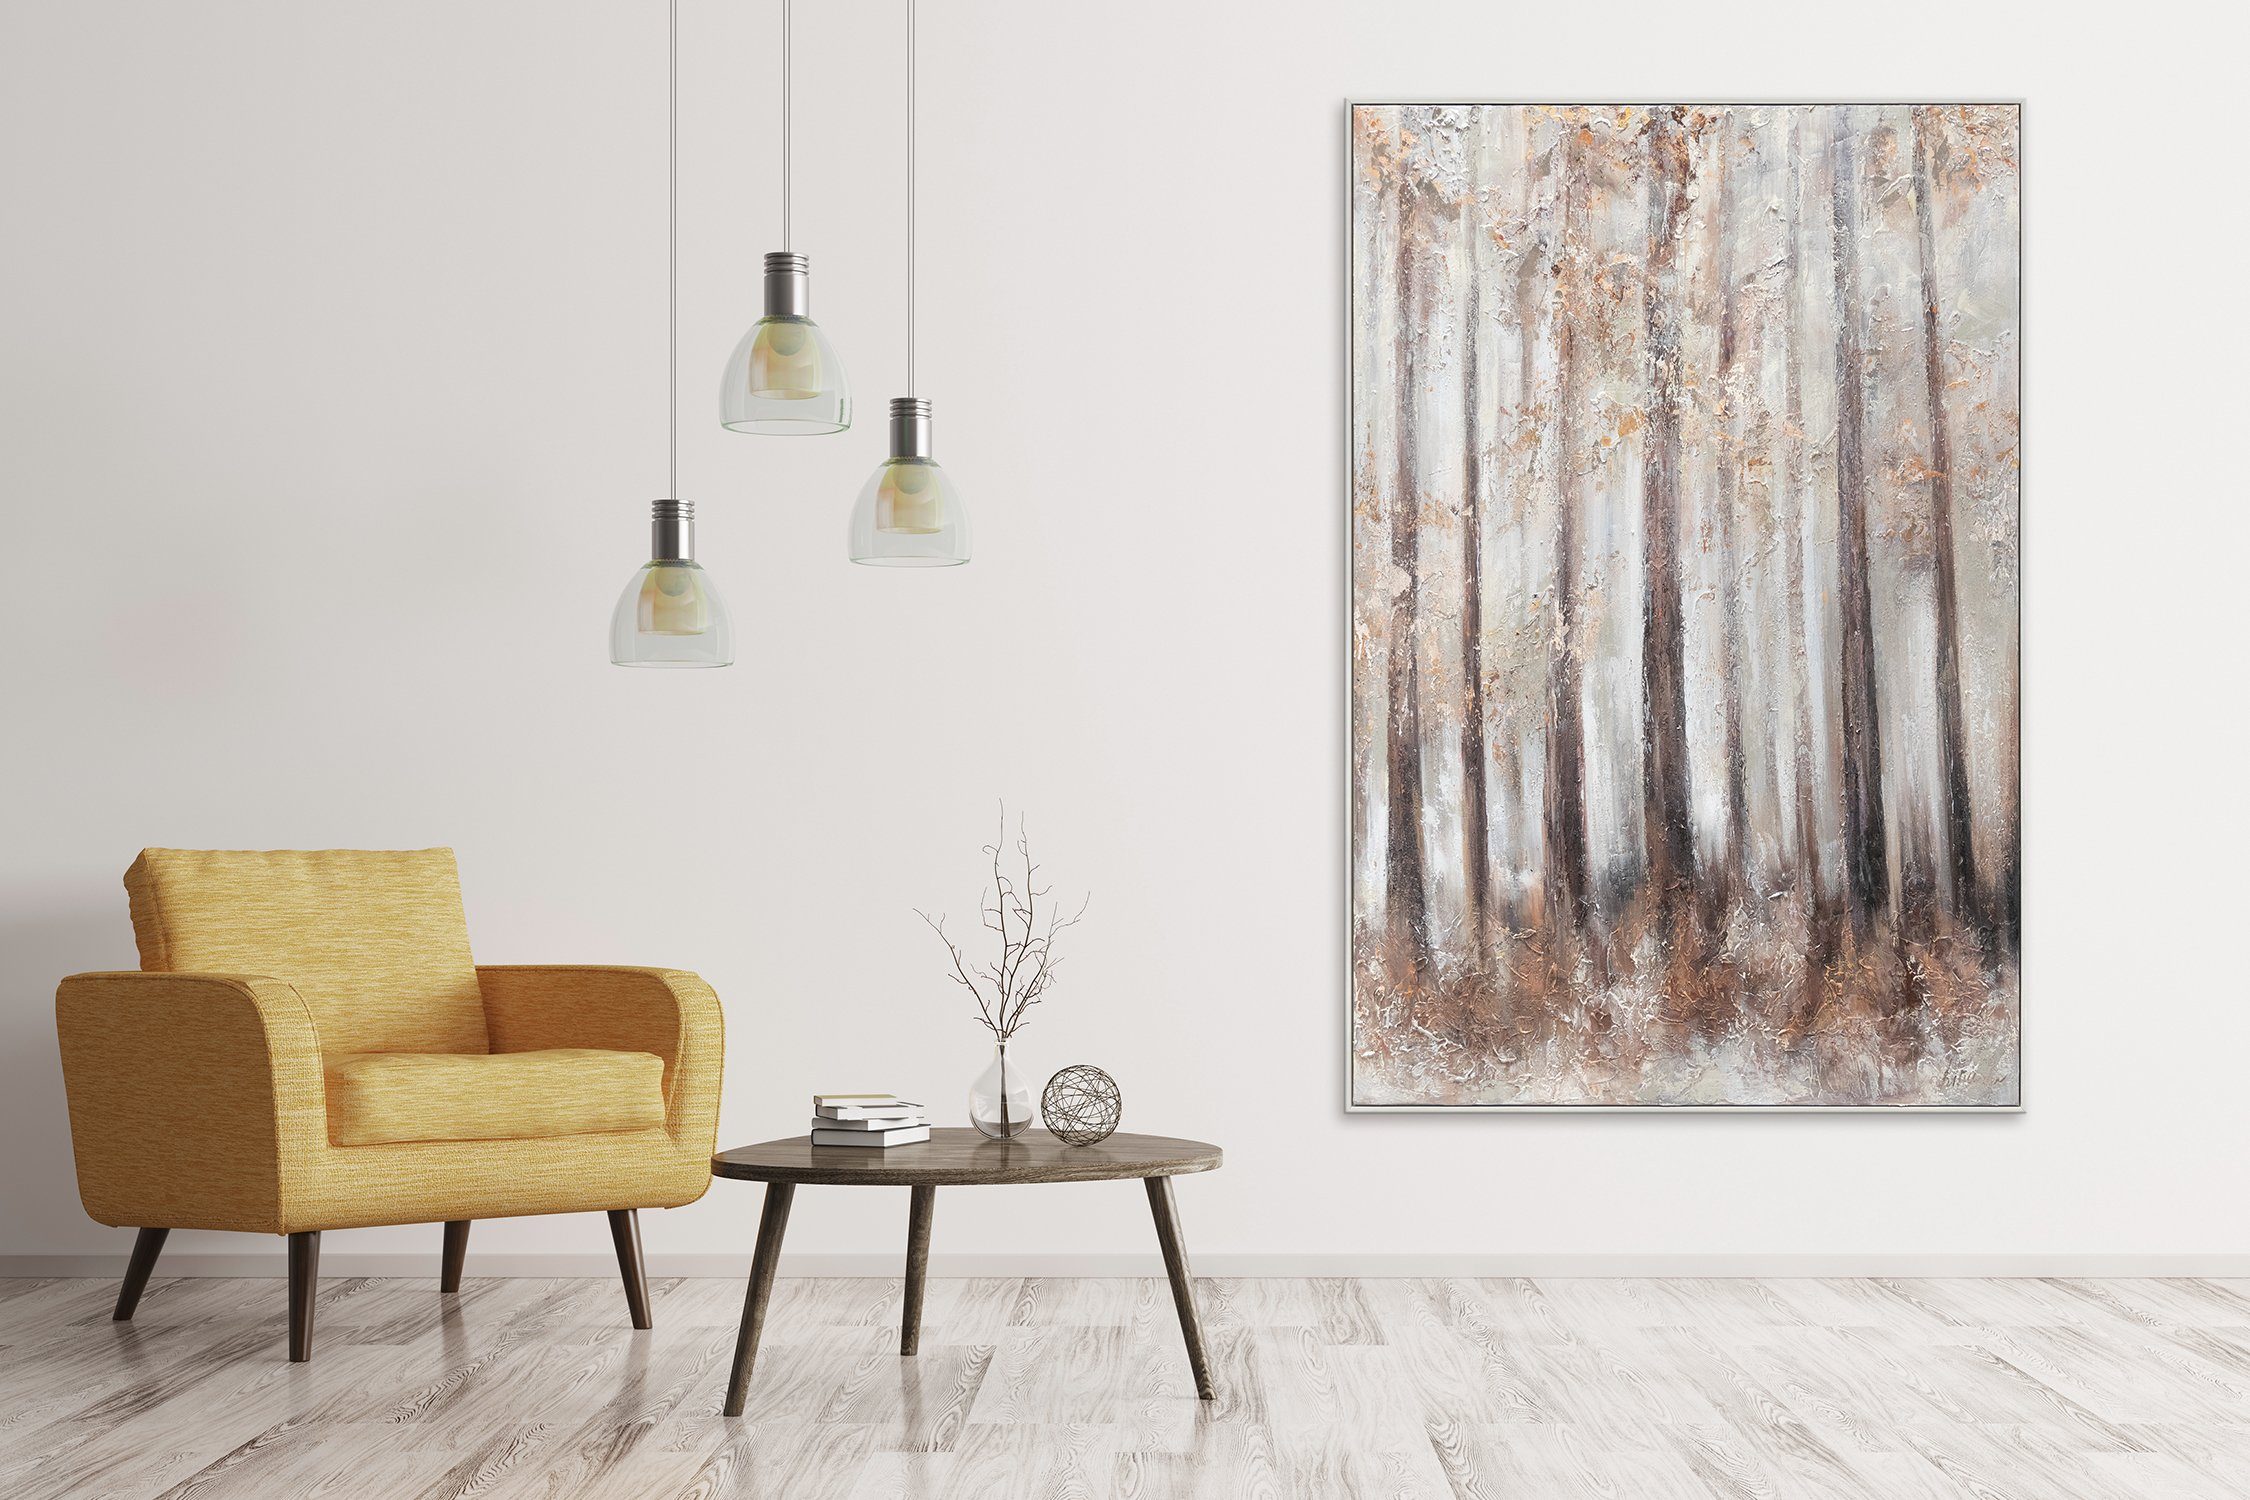 Wald Landschaft Gemälde vom Morgenfrische, Leinwand YS-Art Bild mit Baum Handgemalt Rahmen